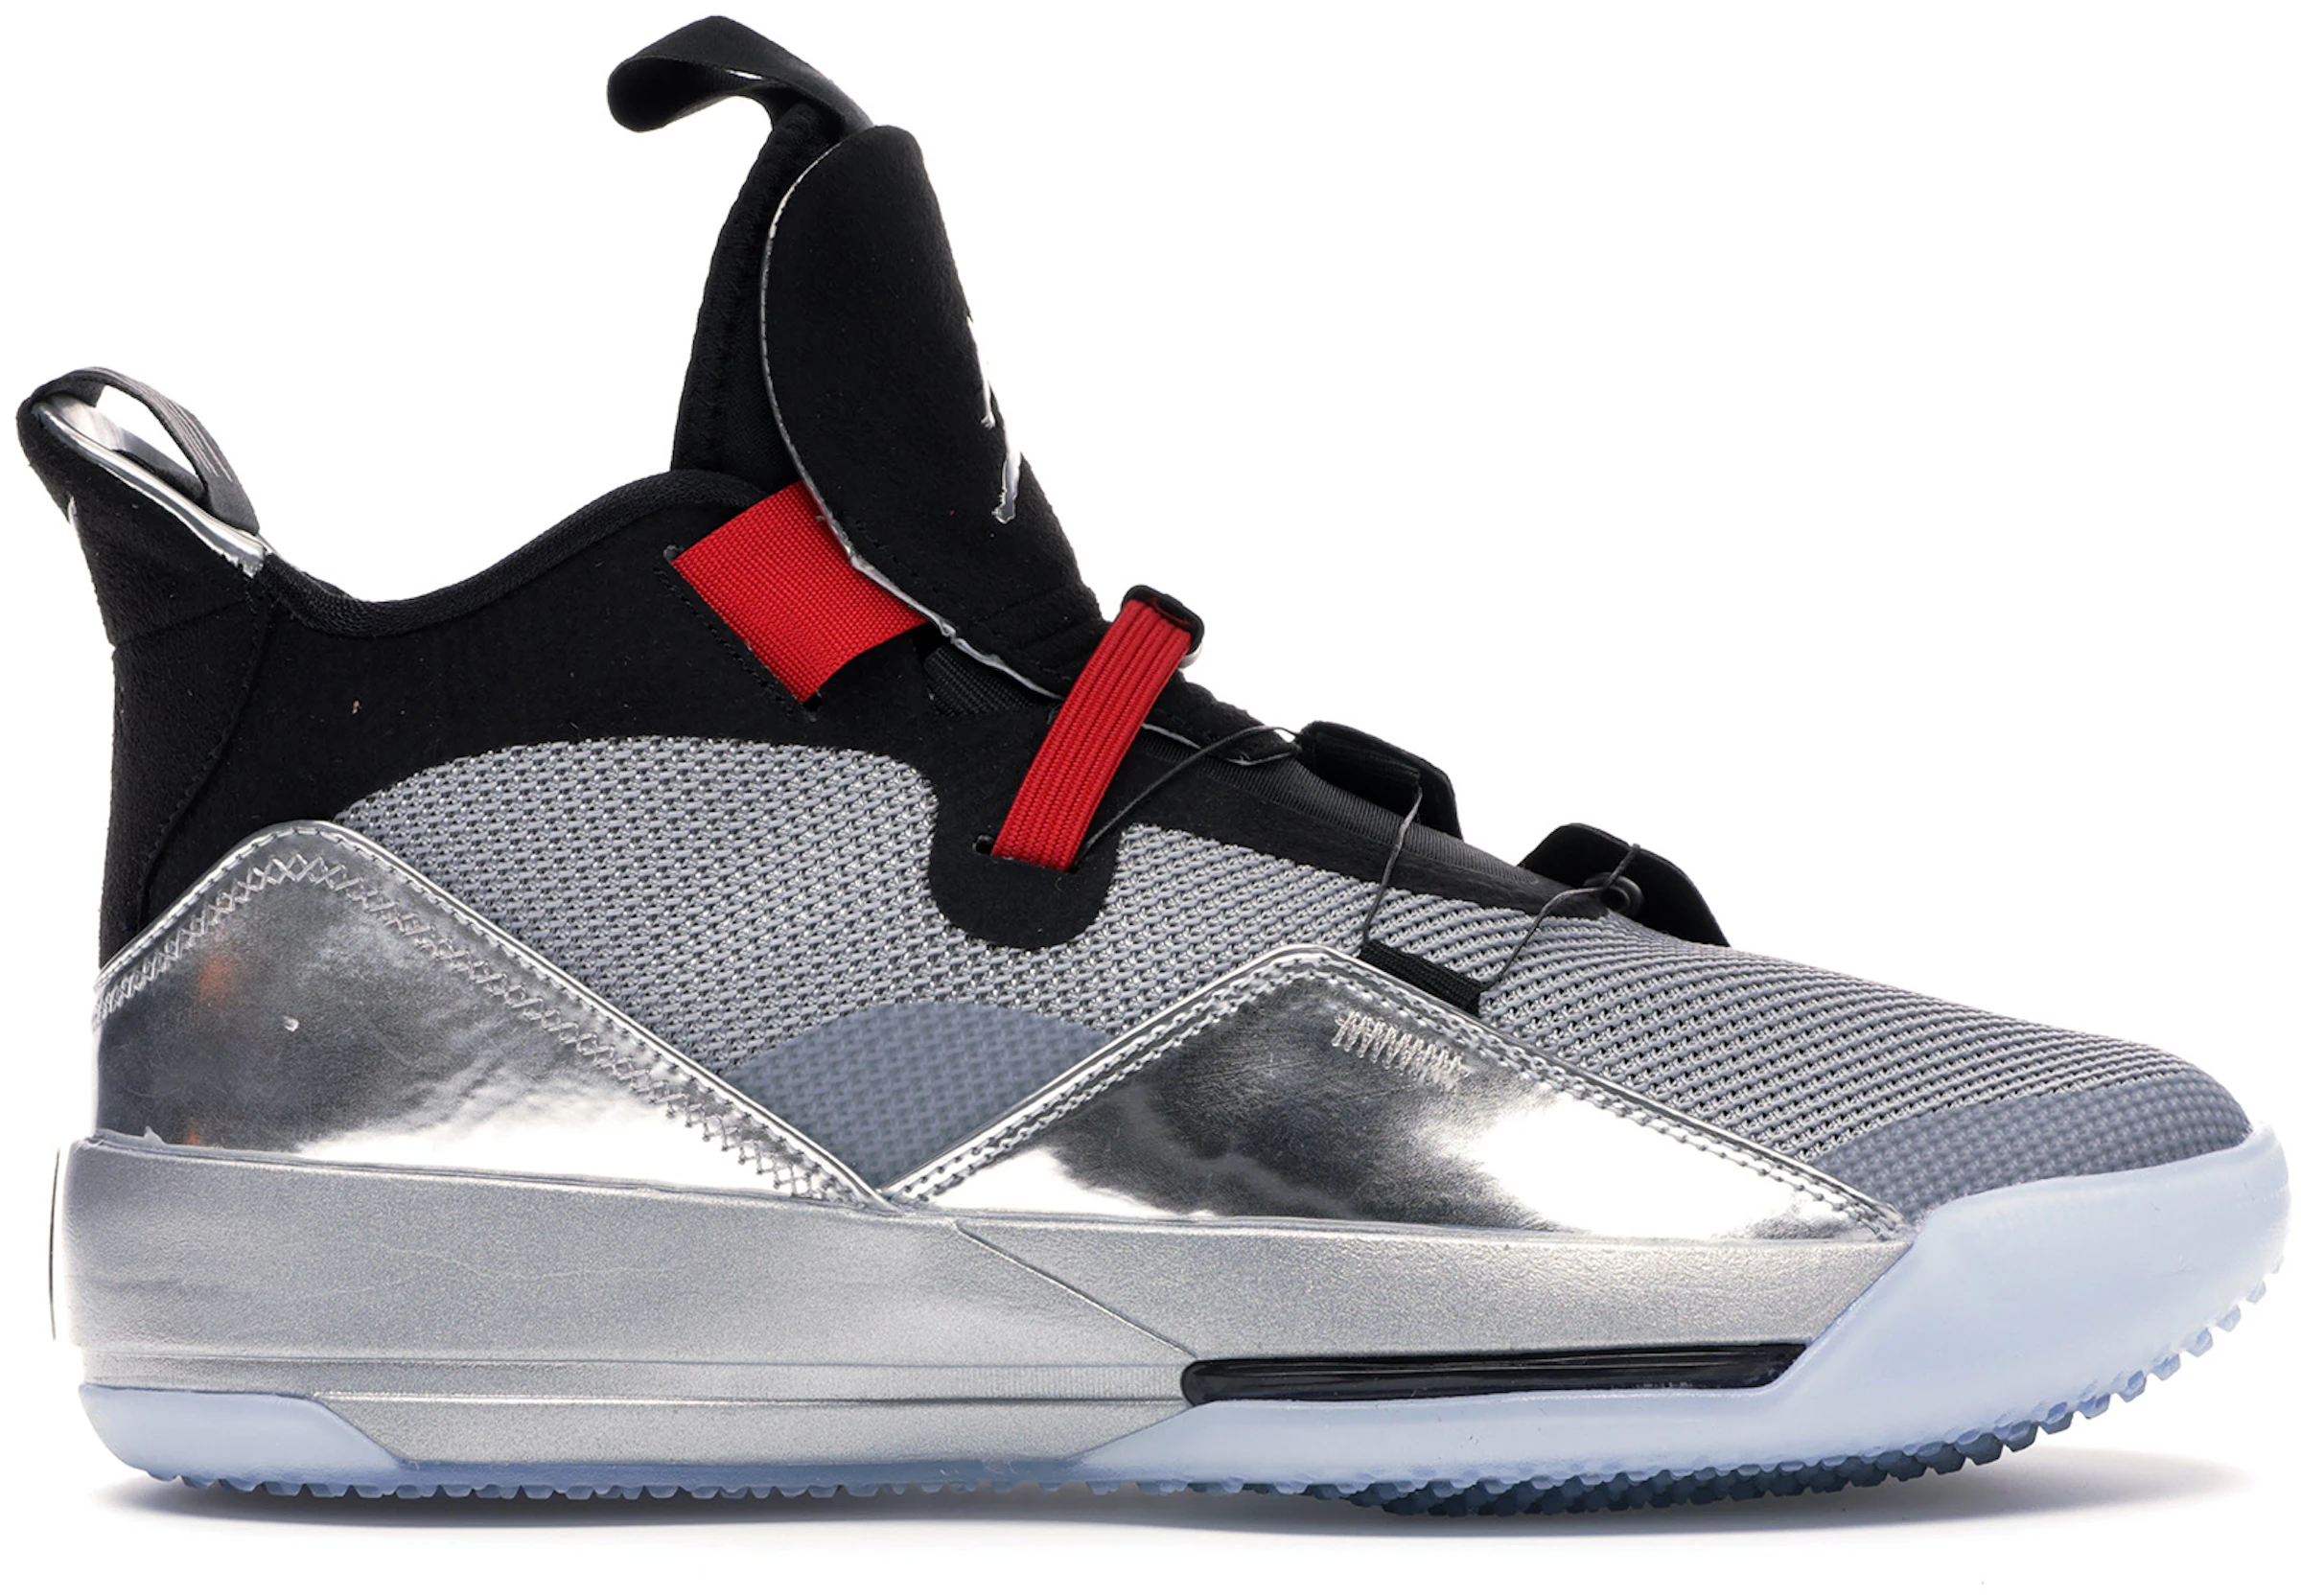 Jordan 33 Calzado y sneakers nuevos - StockX